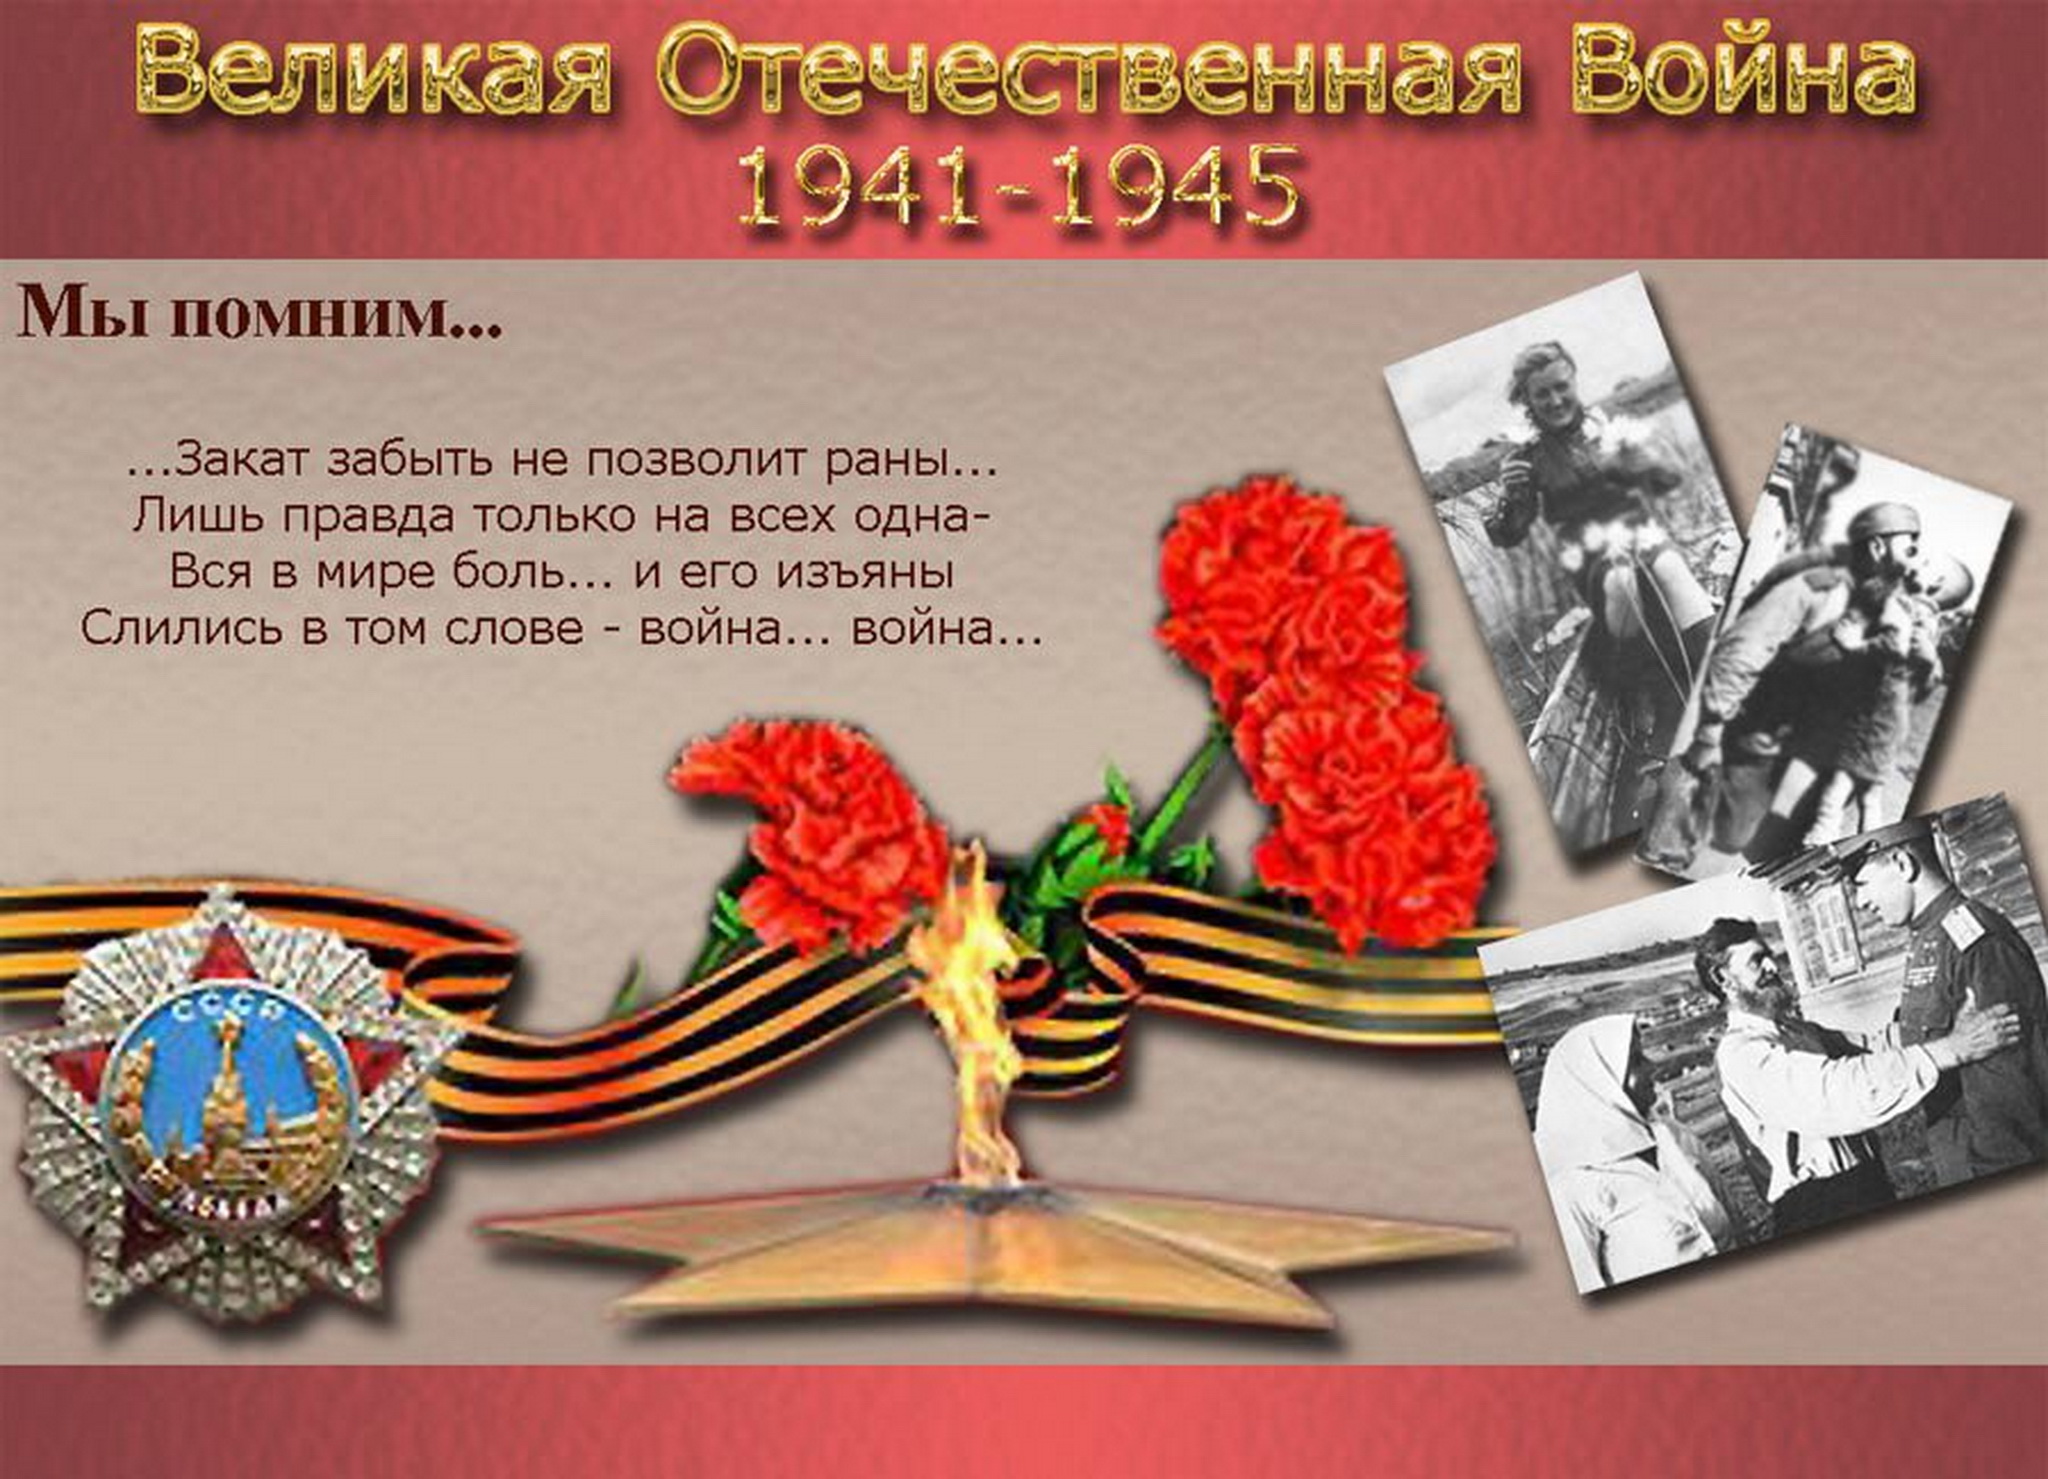 Сохранить память о подвиге. Память о Великой Отечественной войне. Проект про войну.